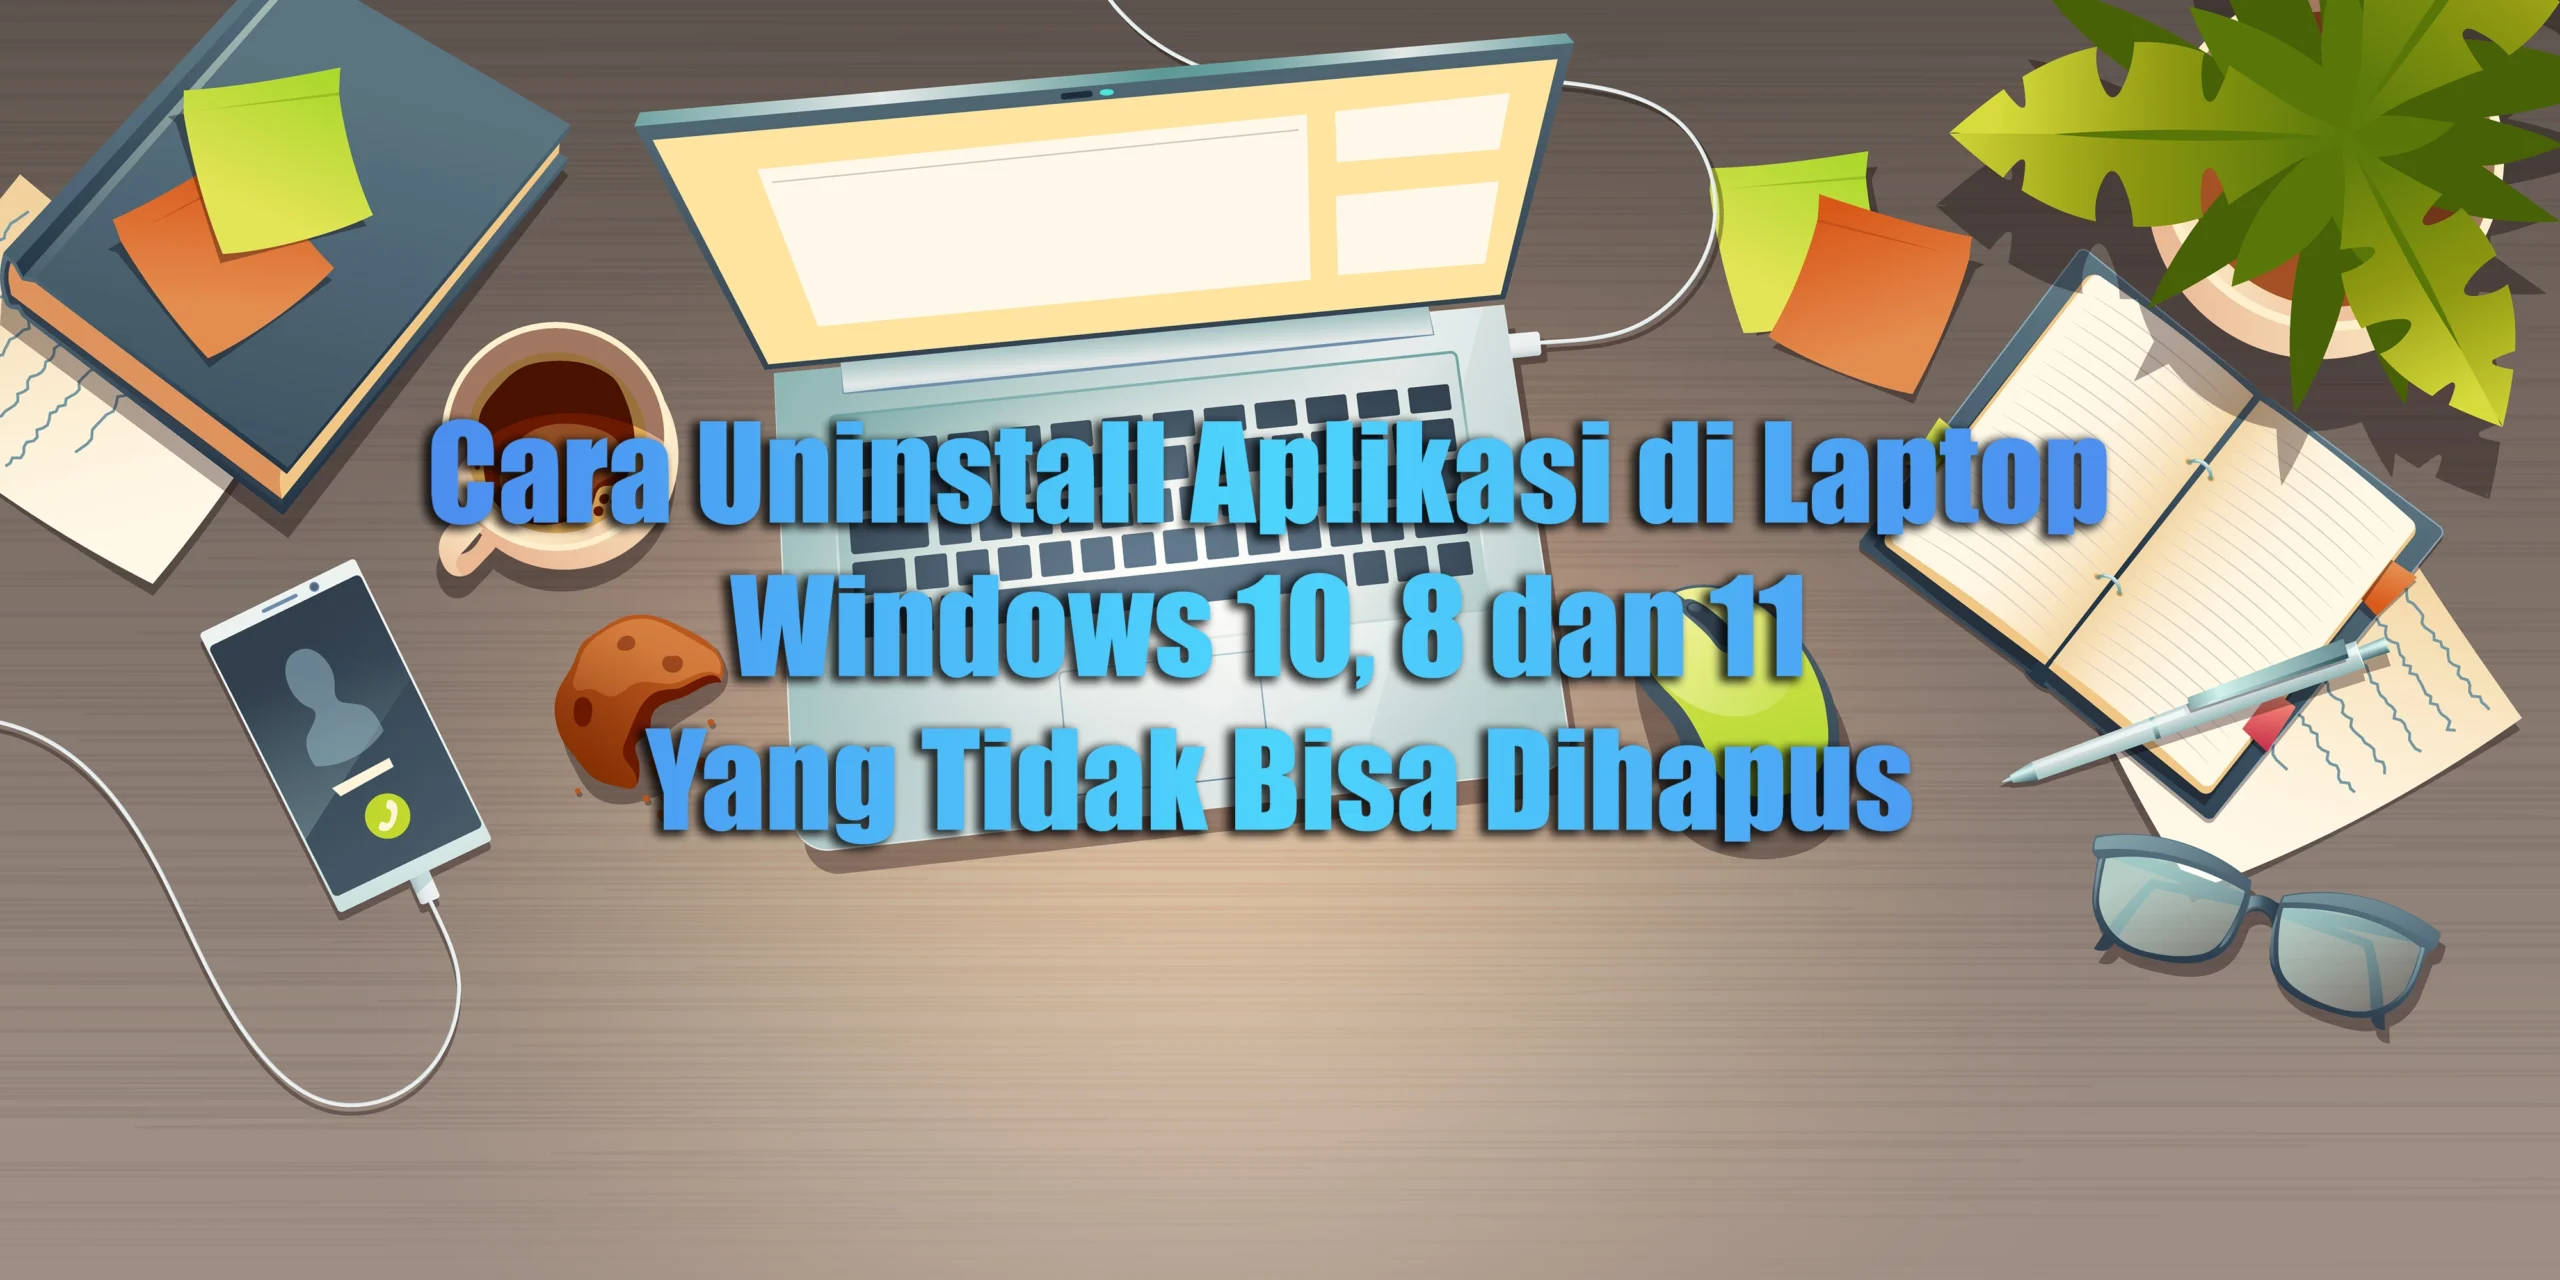 Cara Uninstall Aplikasi di Laptop Windows 10, 8 dan 11 Yang Tidak Bisa Dihapus